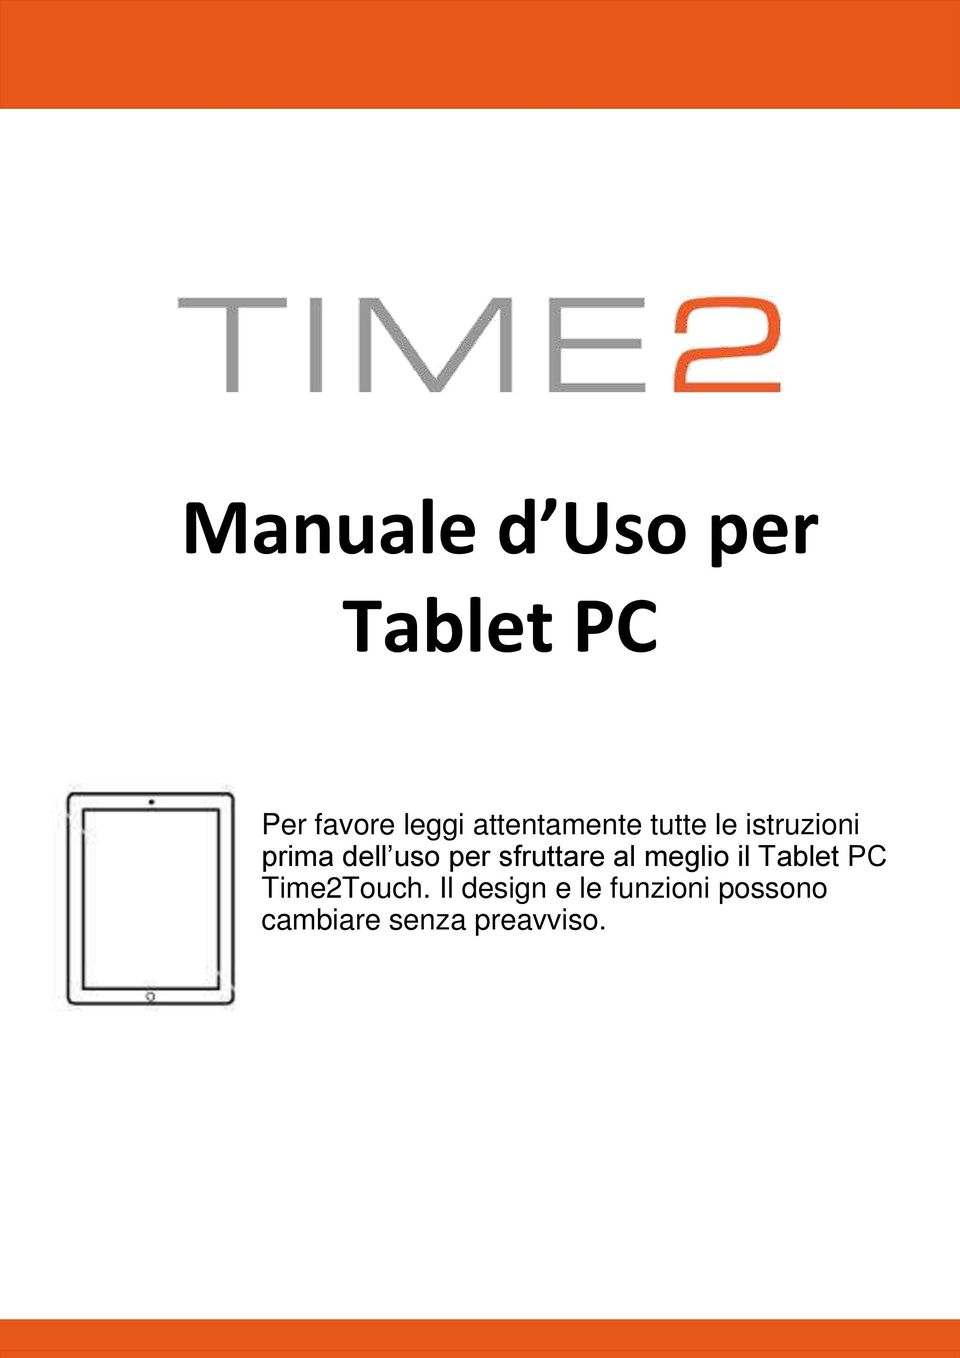 per sfruttare al meglio il Tablet PC Time2Touch.